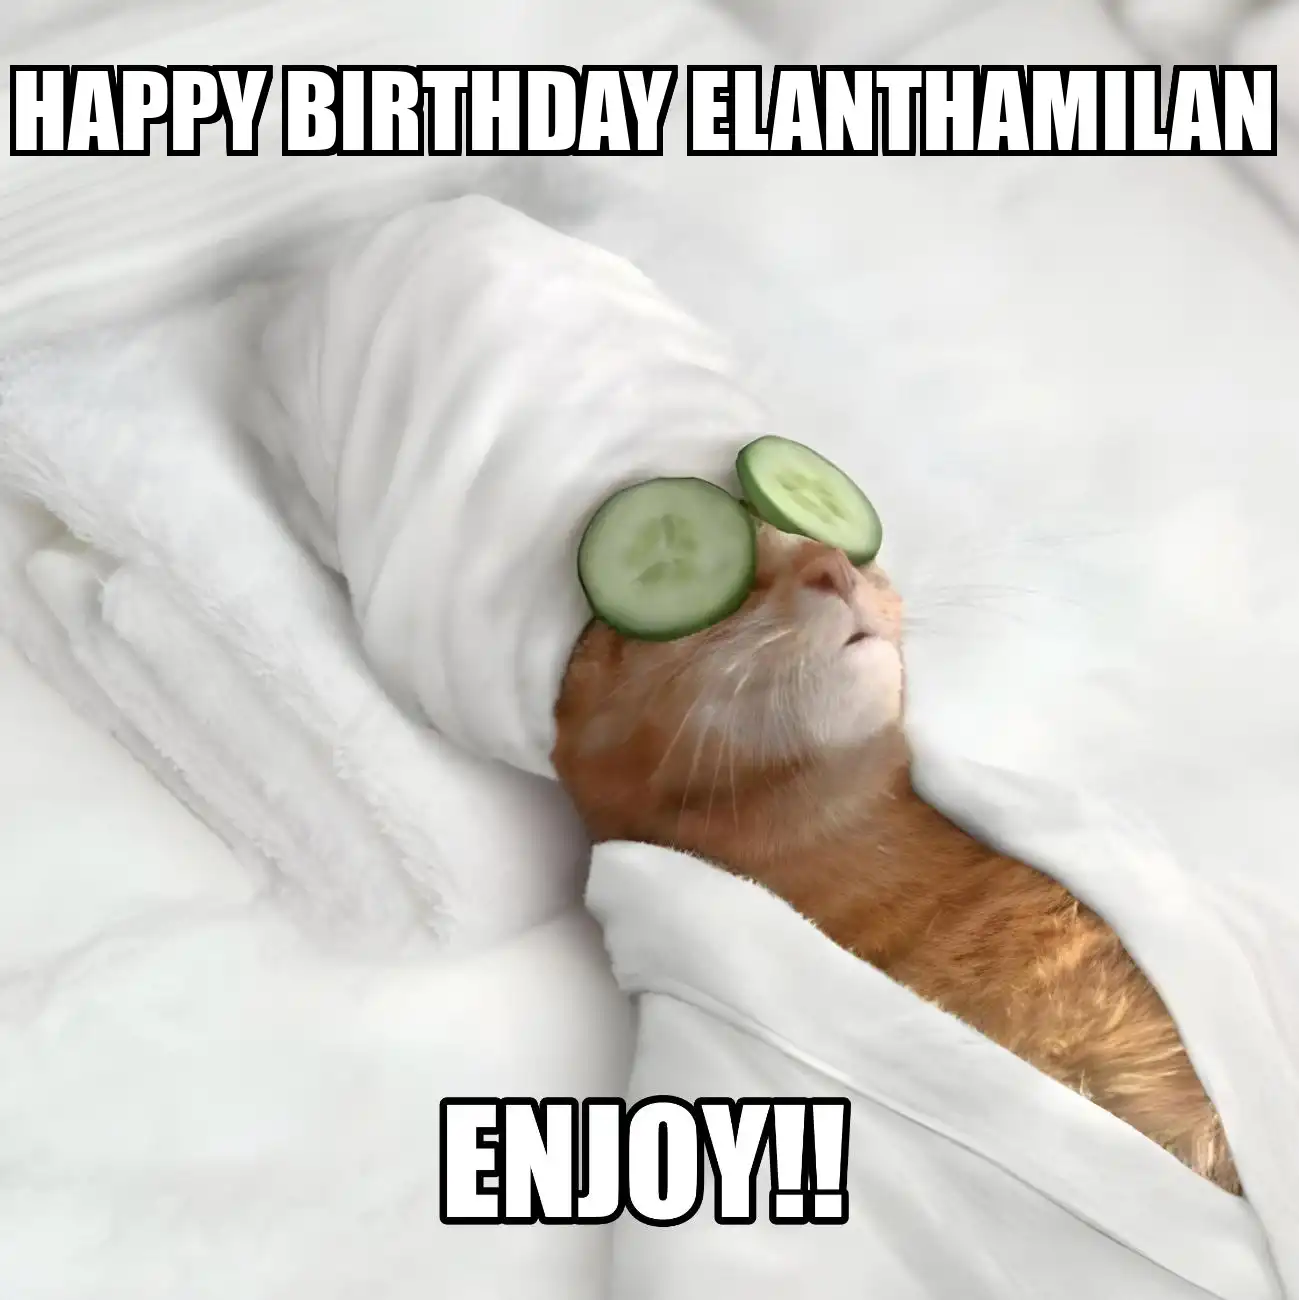 Happy Birthday Elanthamilan Enjoy Cat Meme